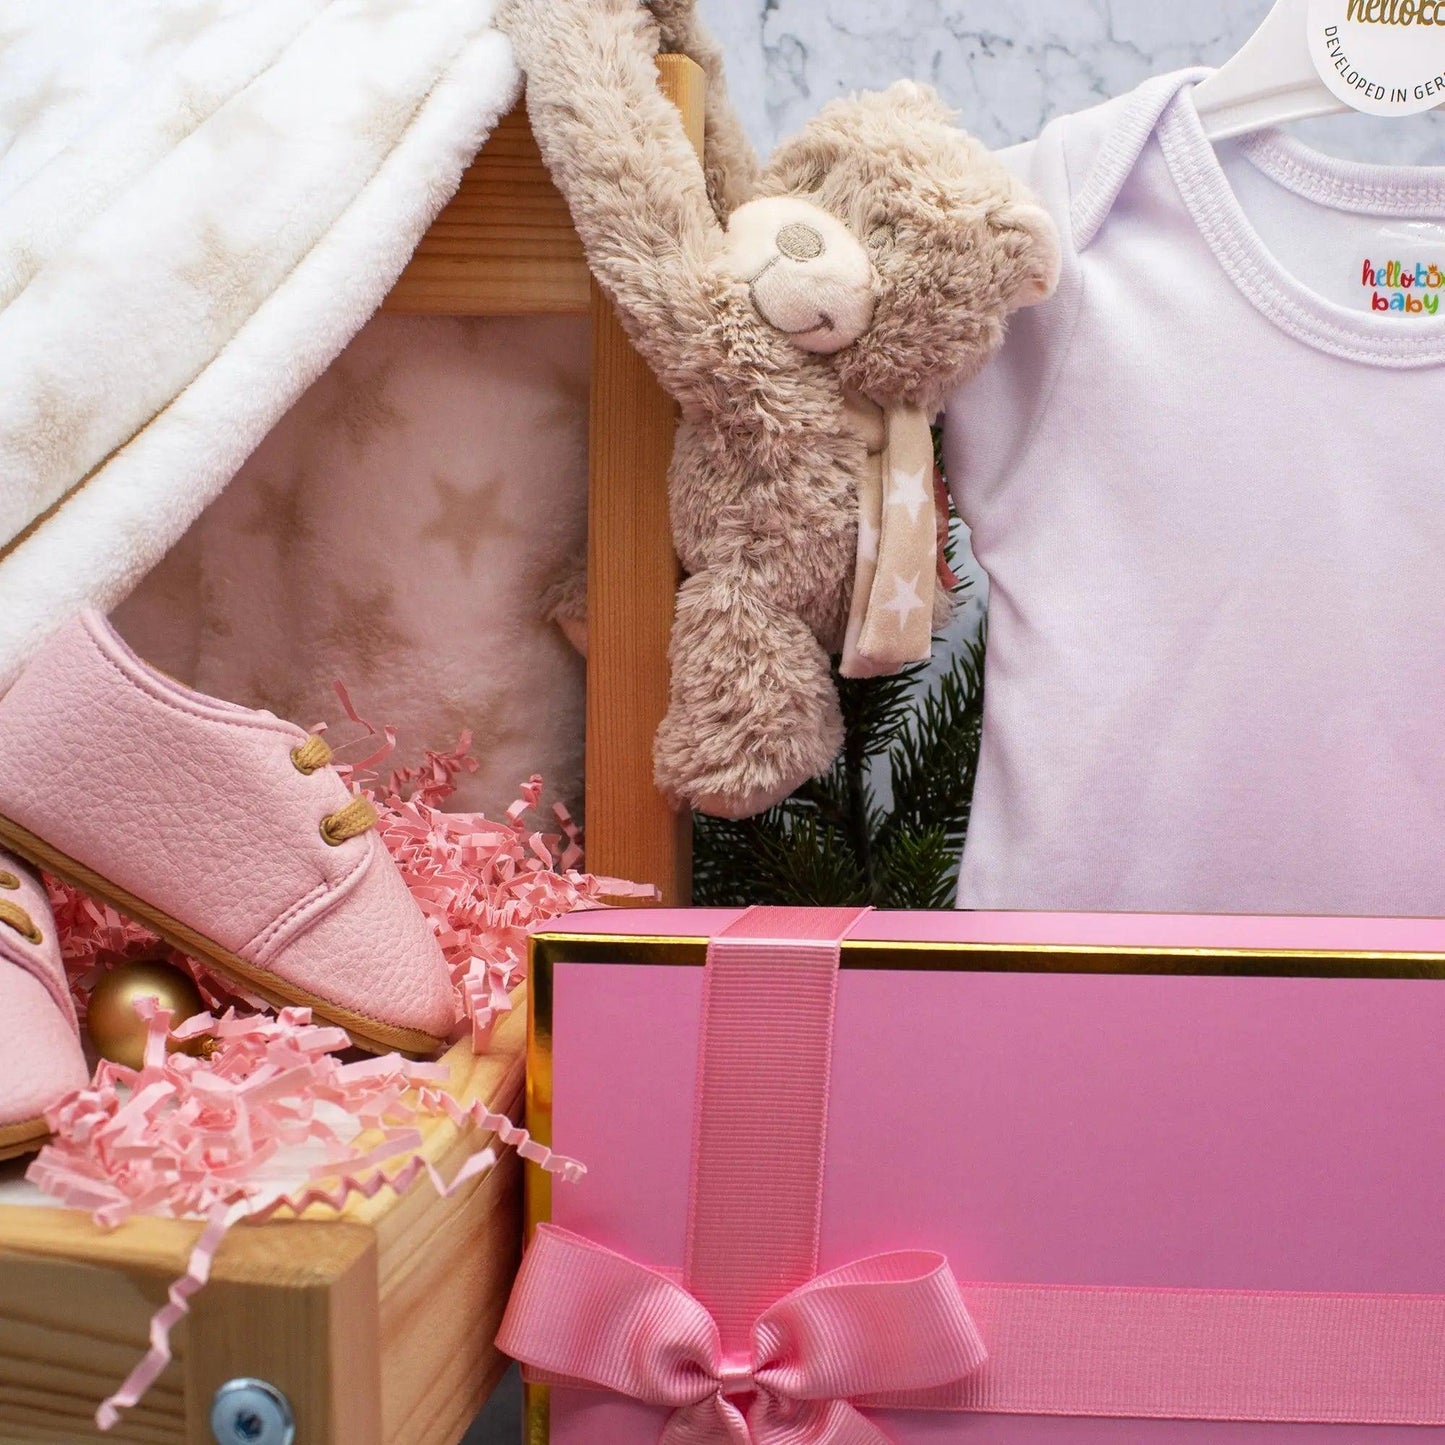 Hello box Baby Geschenkset zur Geburt für mädchen, Neugeborene geschenkset mit Lauflernschuhe, Babydecke, Kuscheltier Rosa Mädchen-3